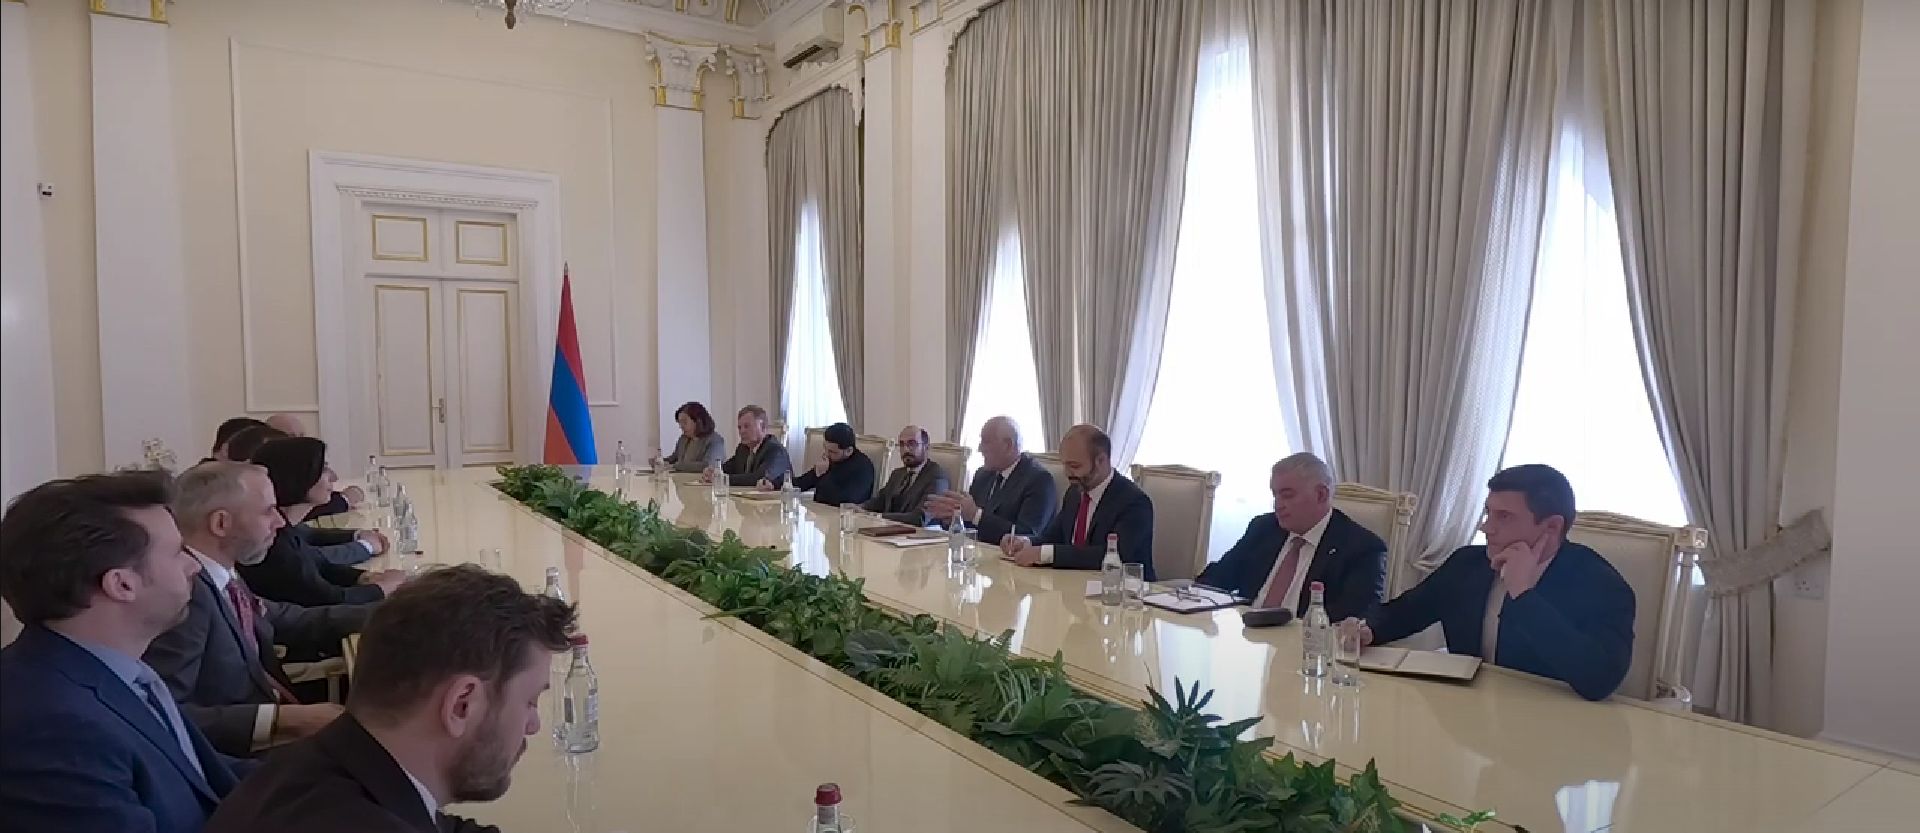 Վահագն Խաչատուրյանի և Մարկետա Պեկարովա Ադամովայի հանդիպմանը կարևորվել է Հայաստանի և Չեխիայի գործարար շրջանակների միջև գործընկերության զարգացումը